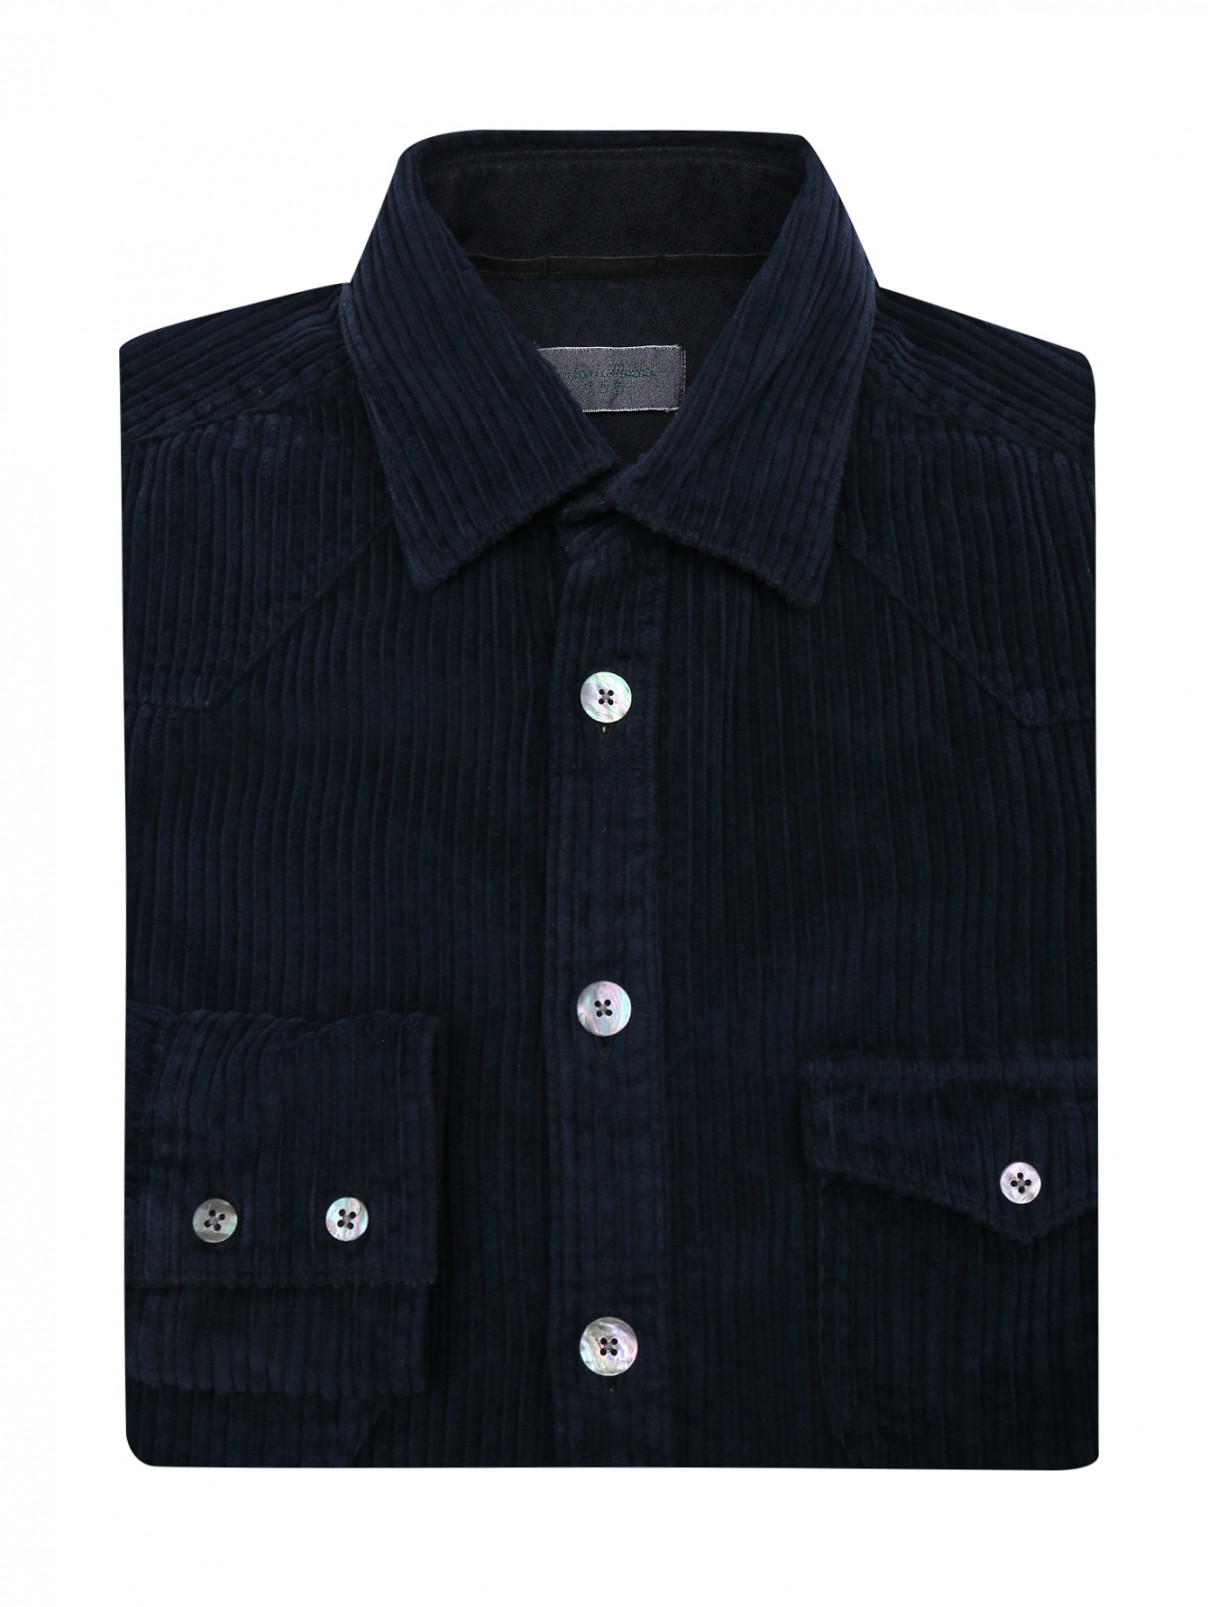 Вельветовая рубашка с накладными карманами Tintoria Mattei  –  Общий вид  – Цвет:  Синий